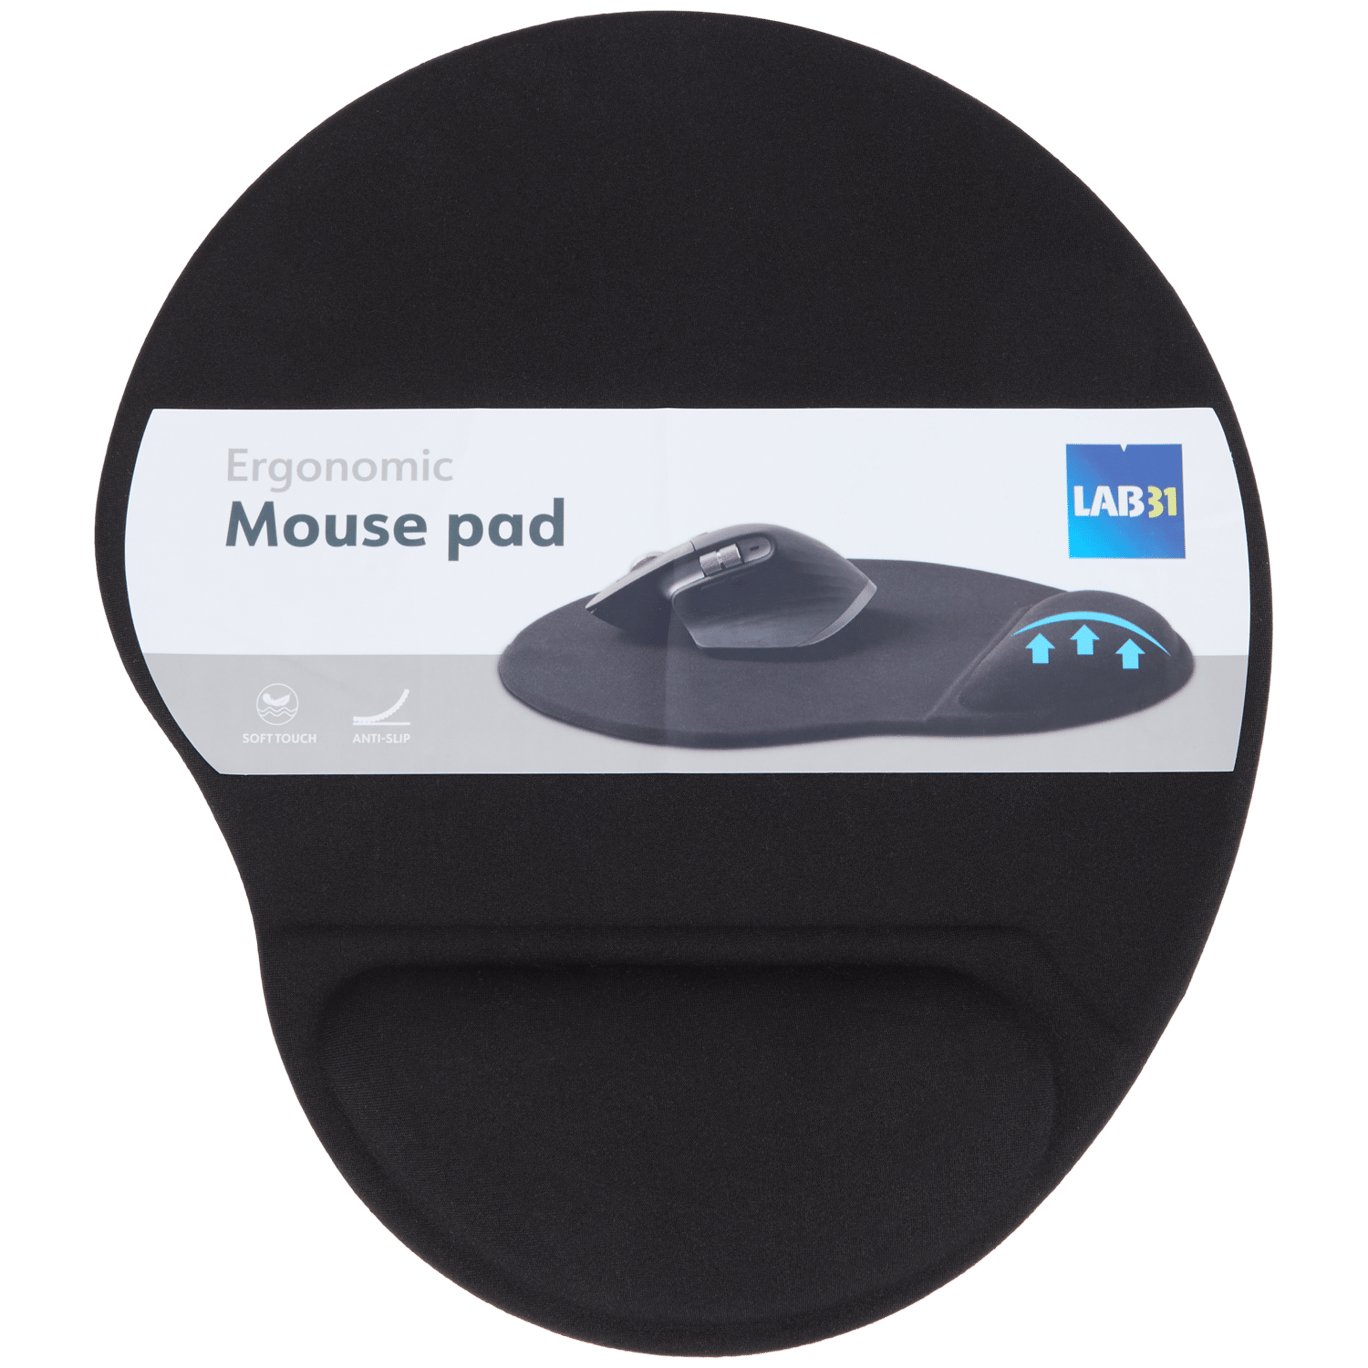 Tappetino ergonomico per mouse Lab31